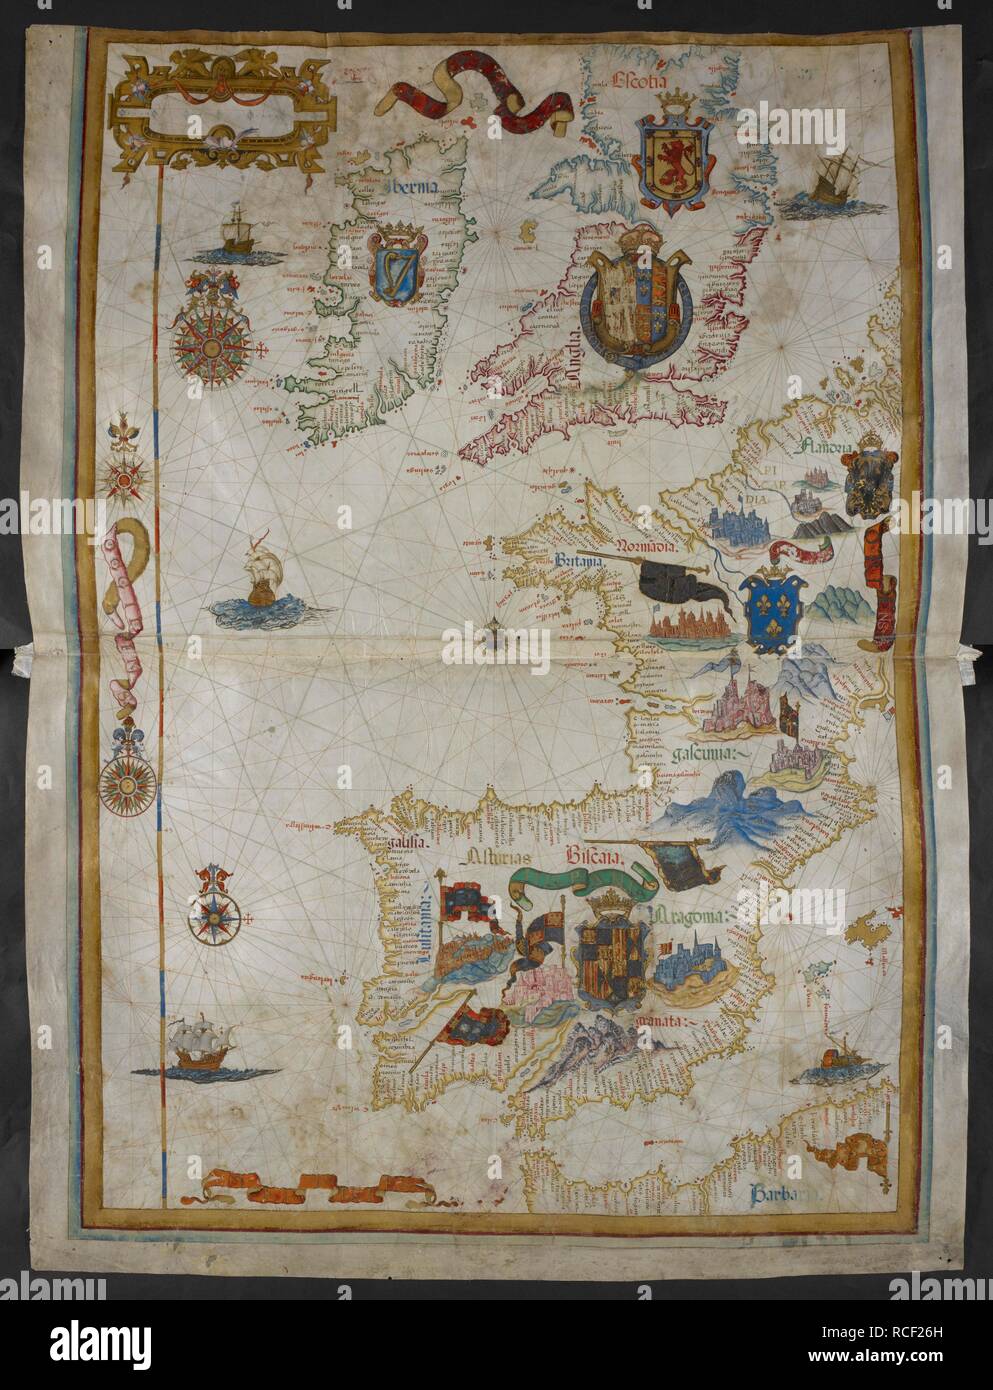 Sea Charts Of The British Isles